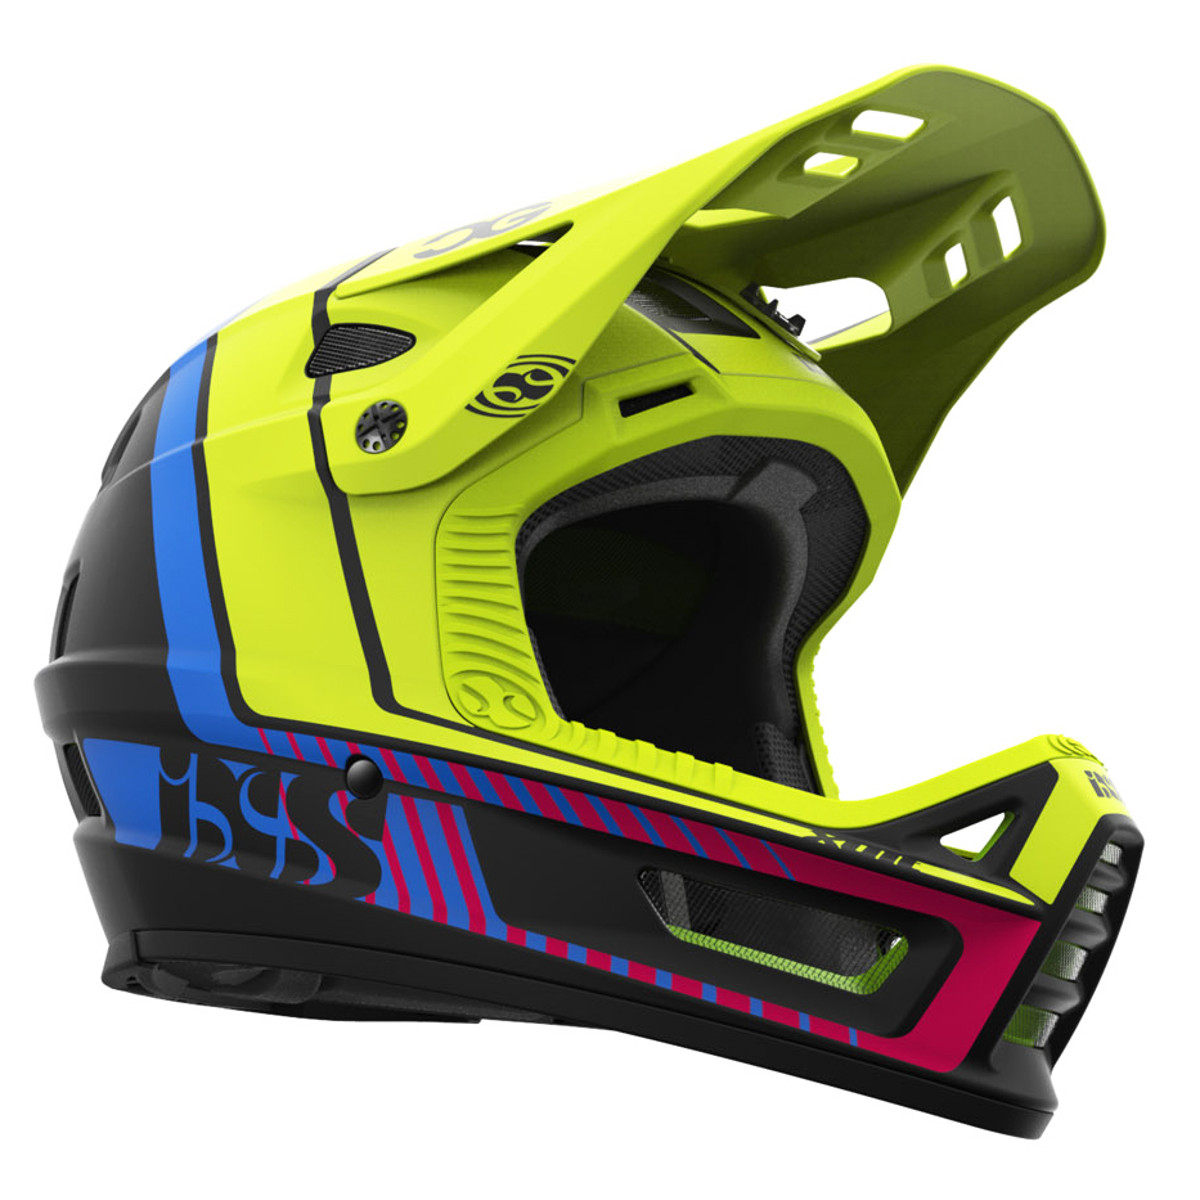 IXS Downhill-MTB Helm Xult Cedric Gracia CG Edition